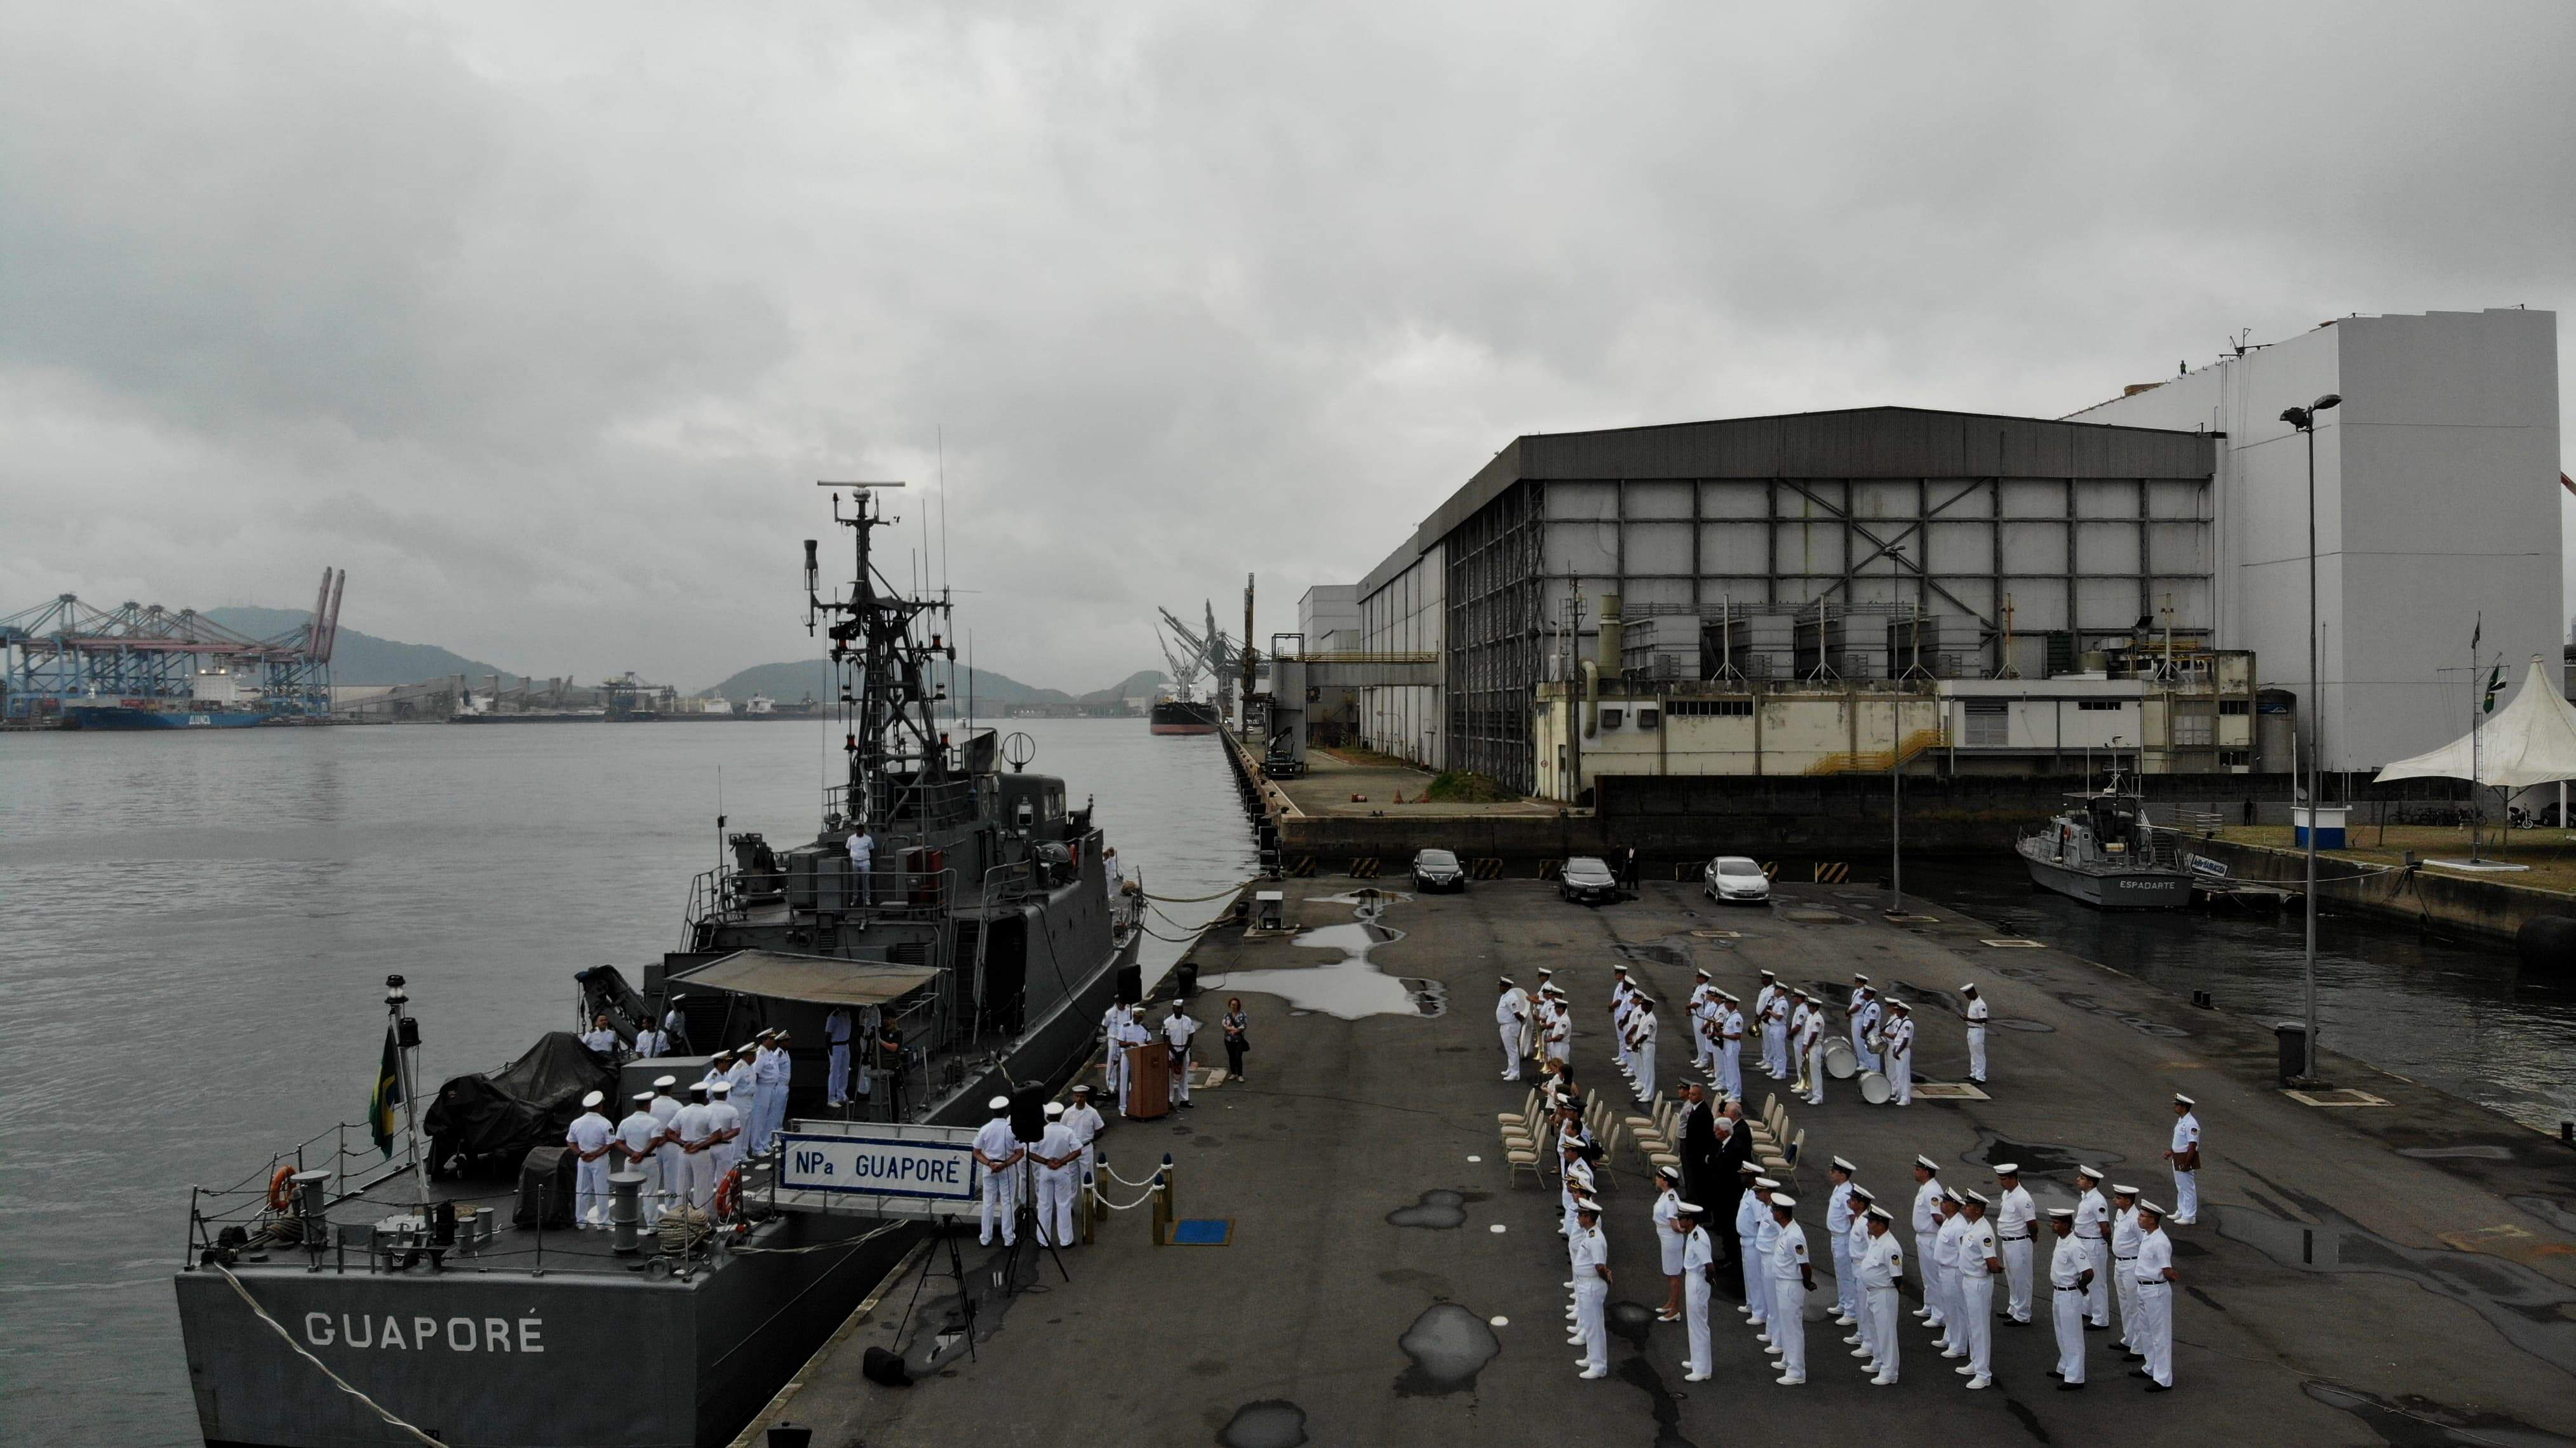 Navio-patrulha, que ficava no arsenal de Marinha, no Rio de Janeiro, veio para o cais santista